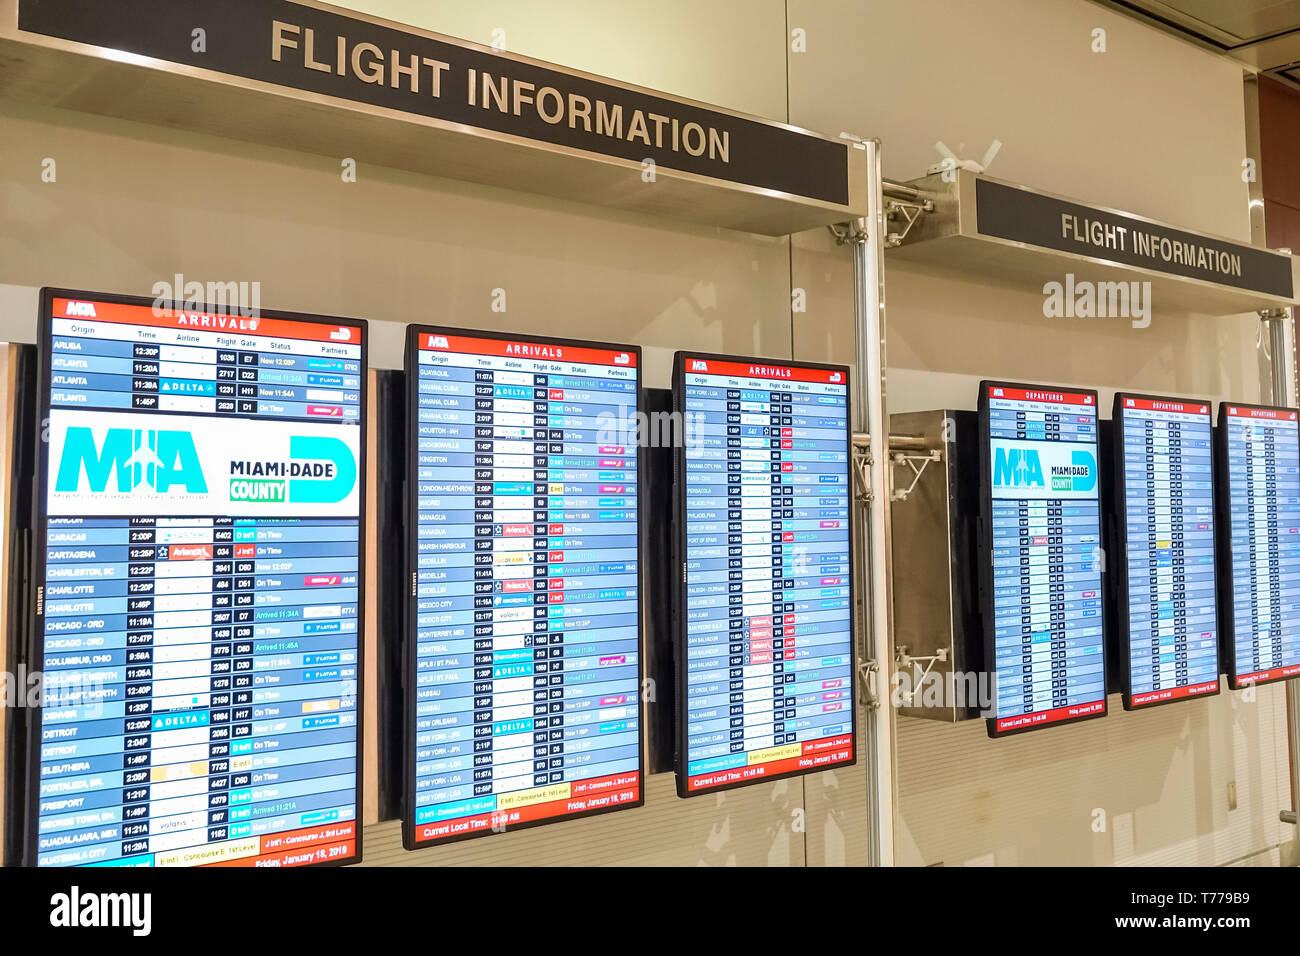 Miami Florida, Aeropuerto Internacional MIA, información de vuelos, pizarras digitales de información de vuelos, llegadas, FL190118010 Foto de stock